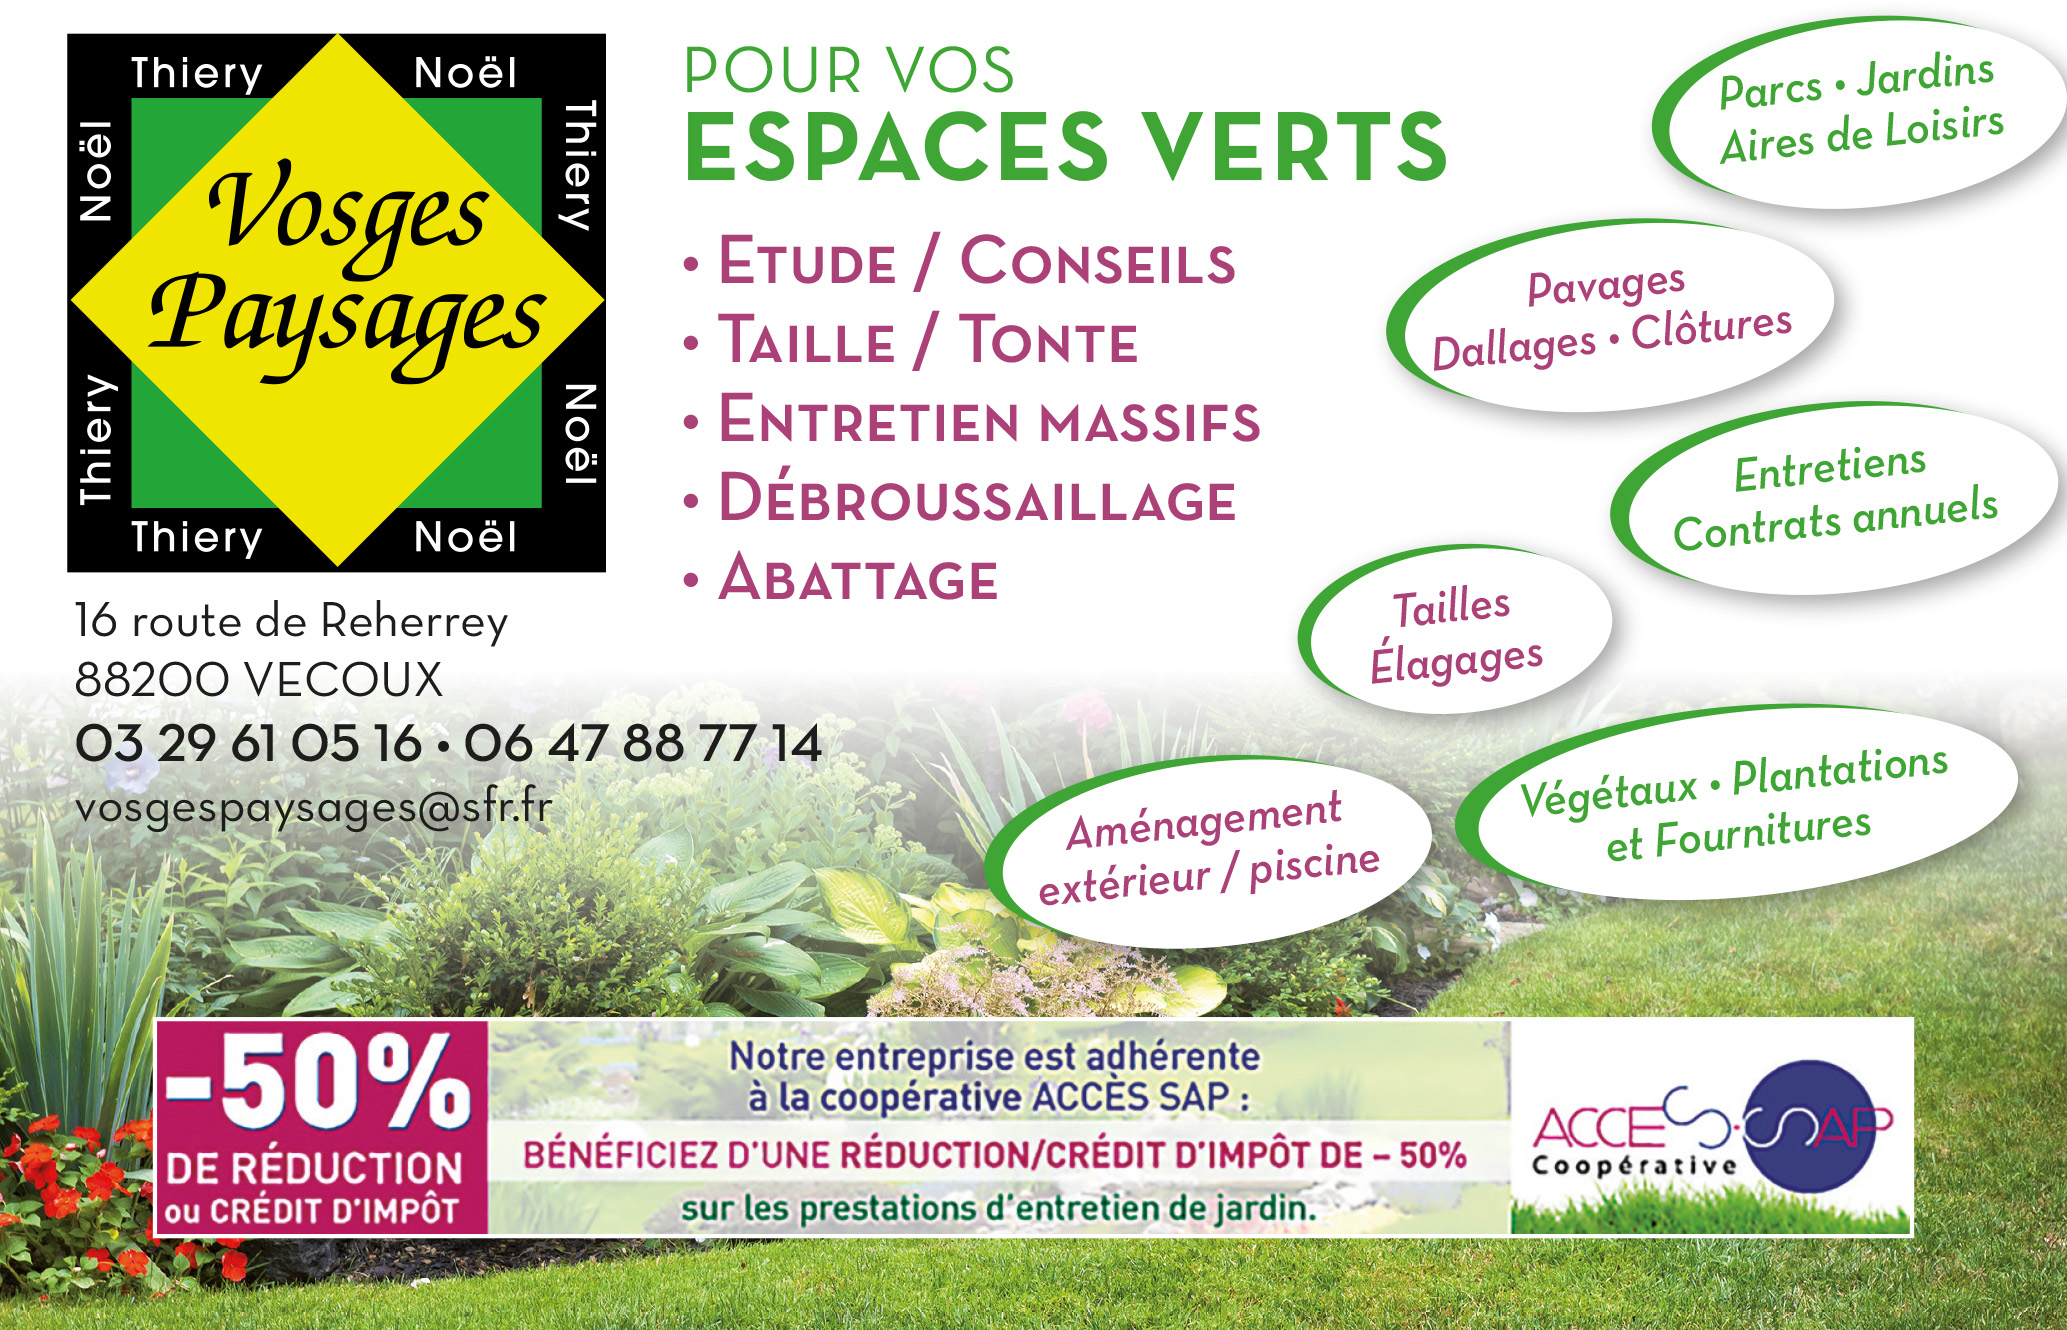 Vosges Paysages 175x115.jpg